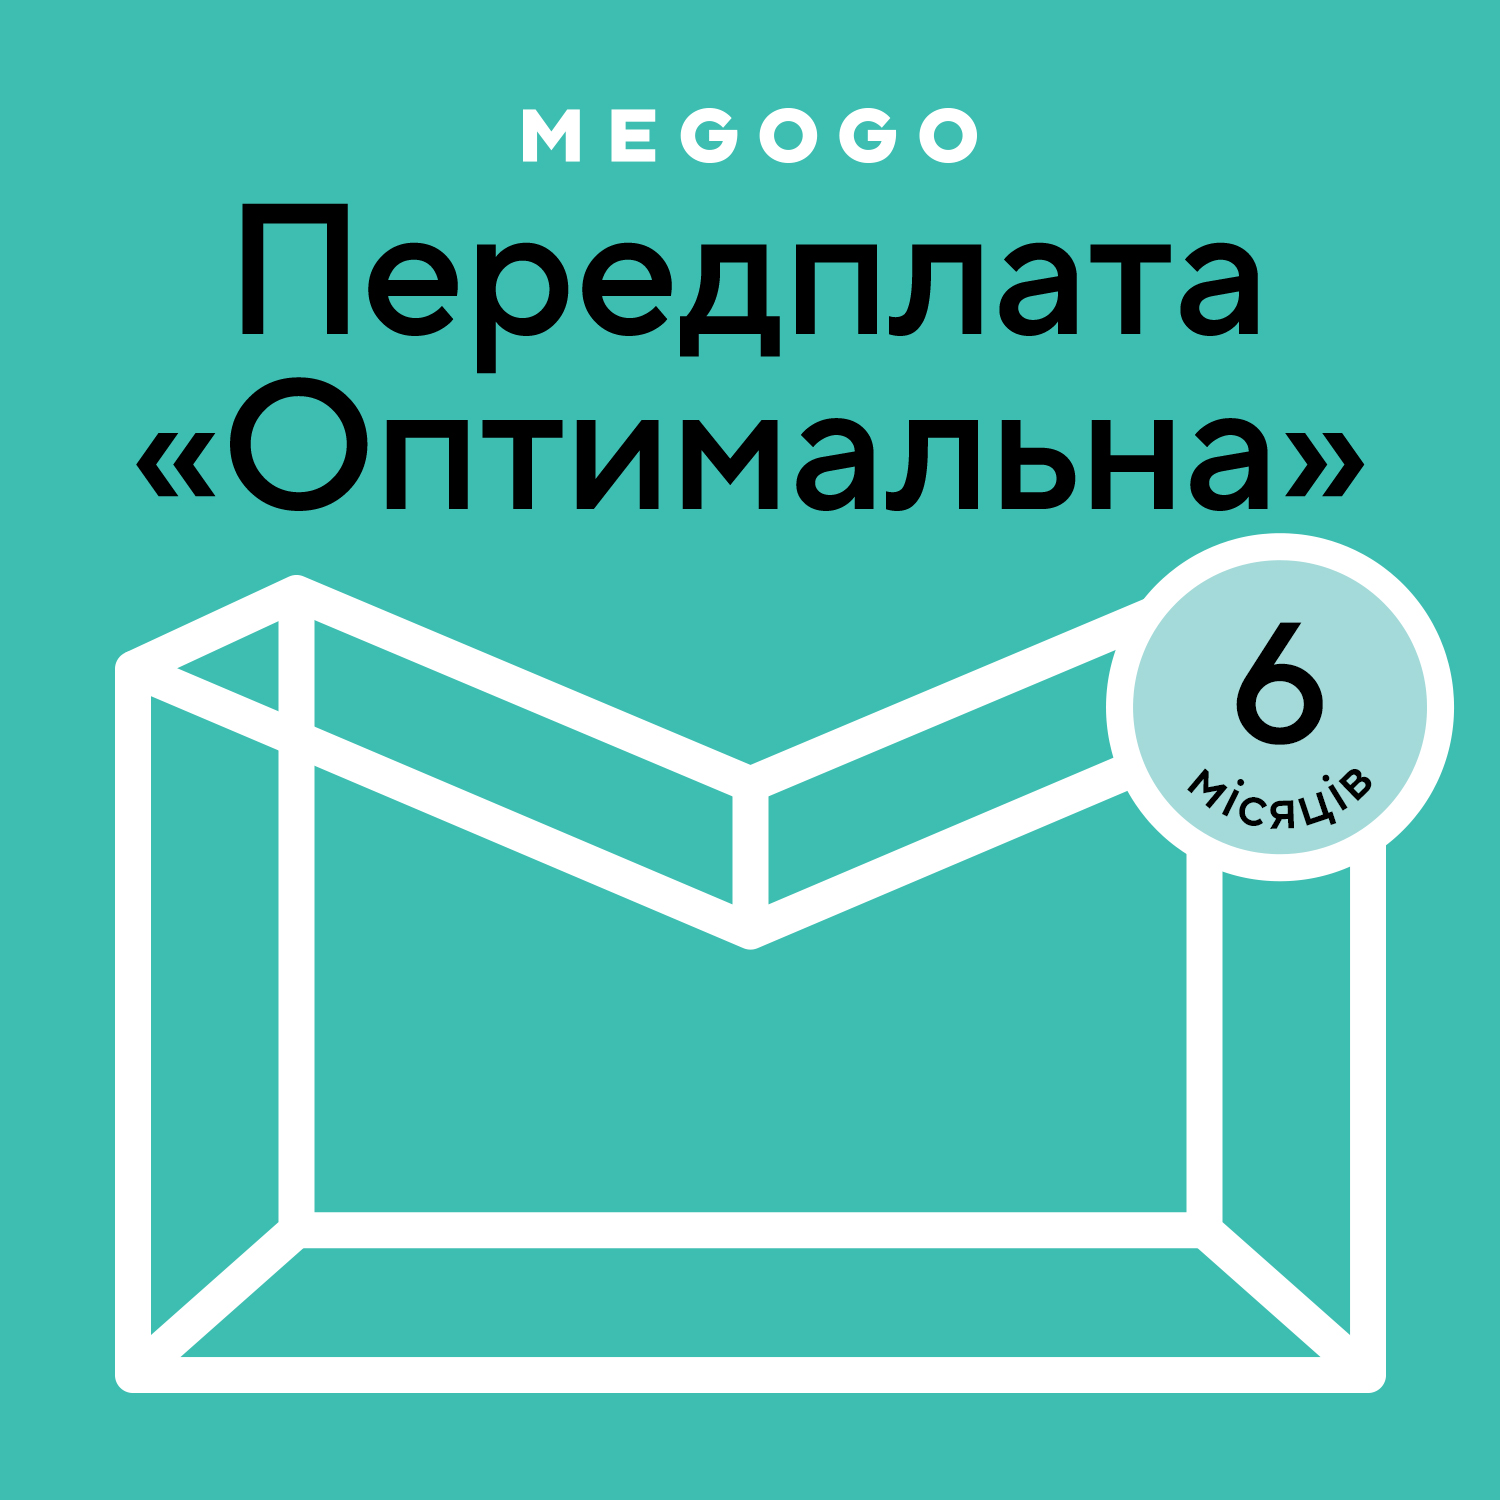 MEGOGO «Кіно і ТБ: Оптимальна» 6 міс в Києві